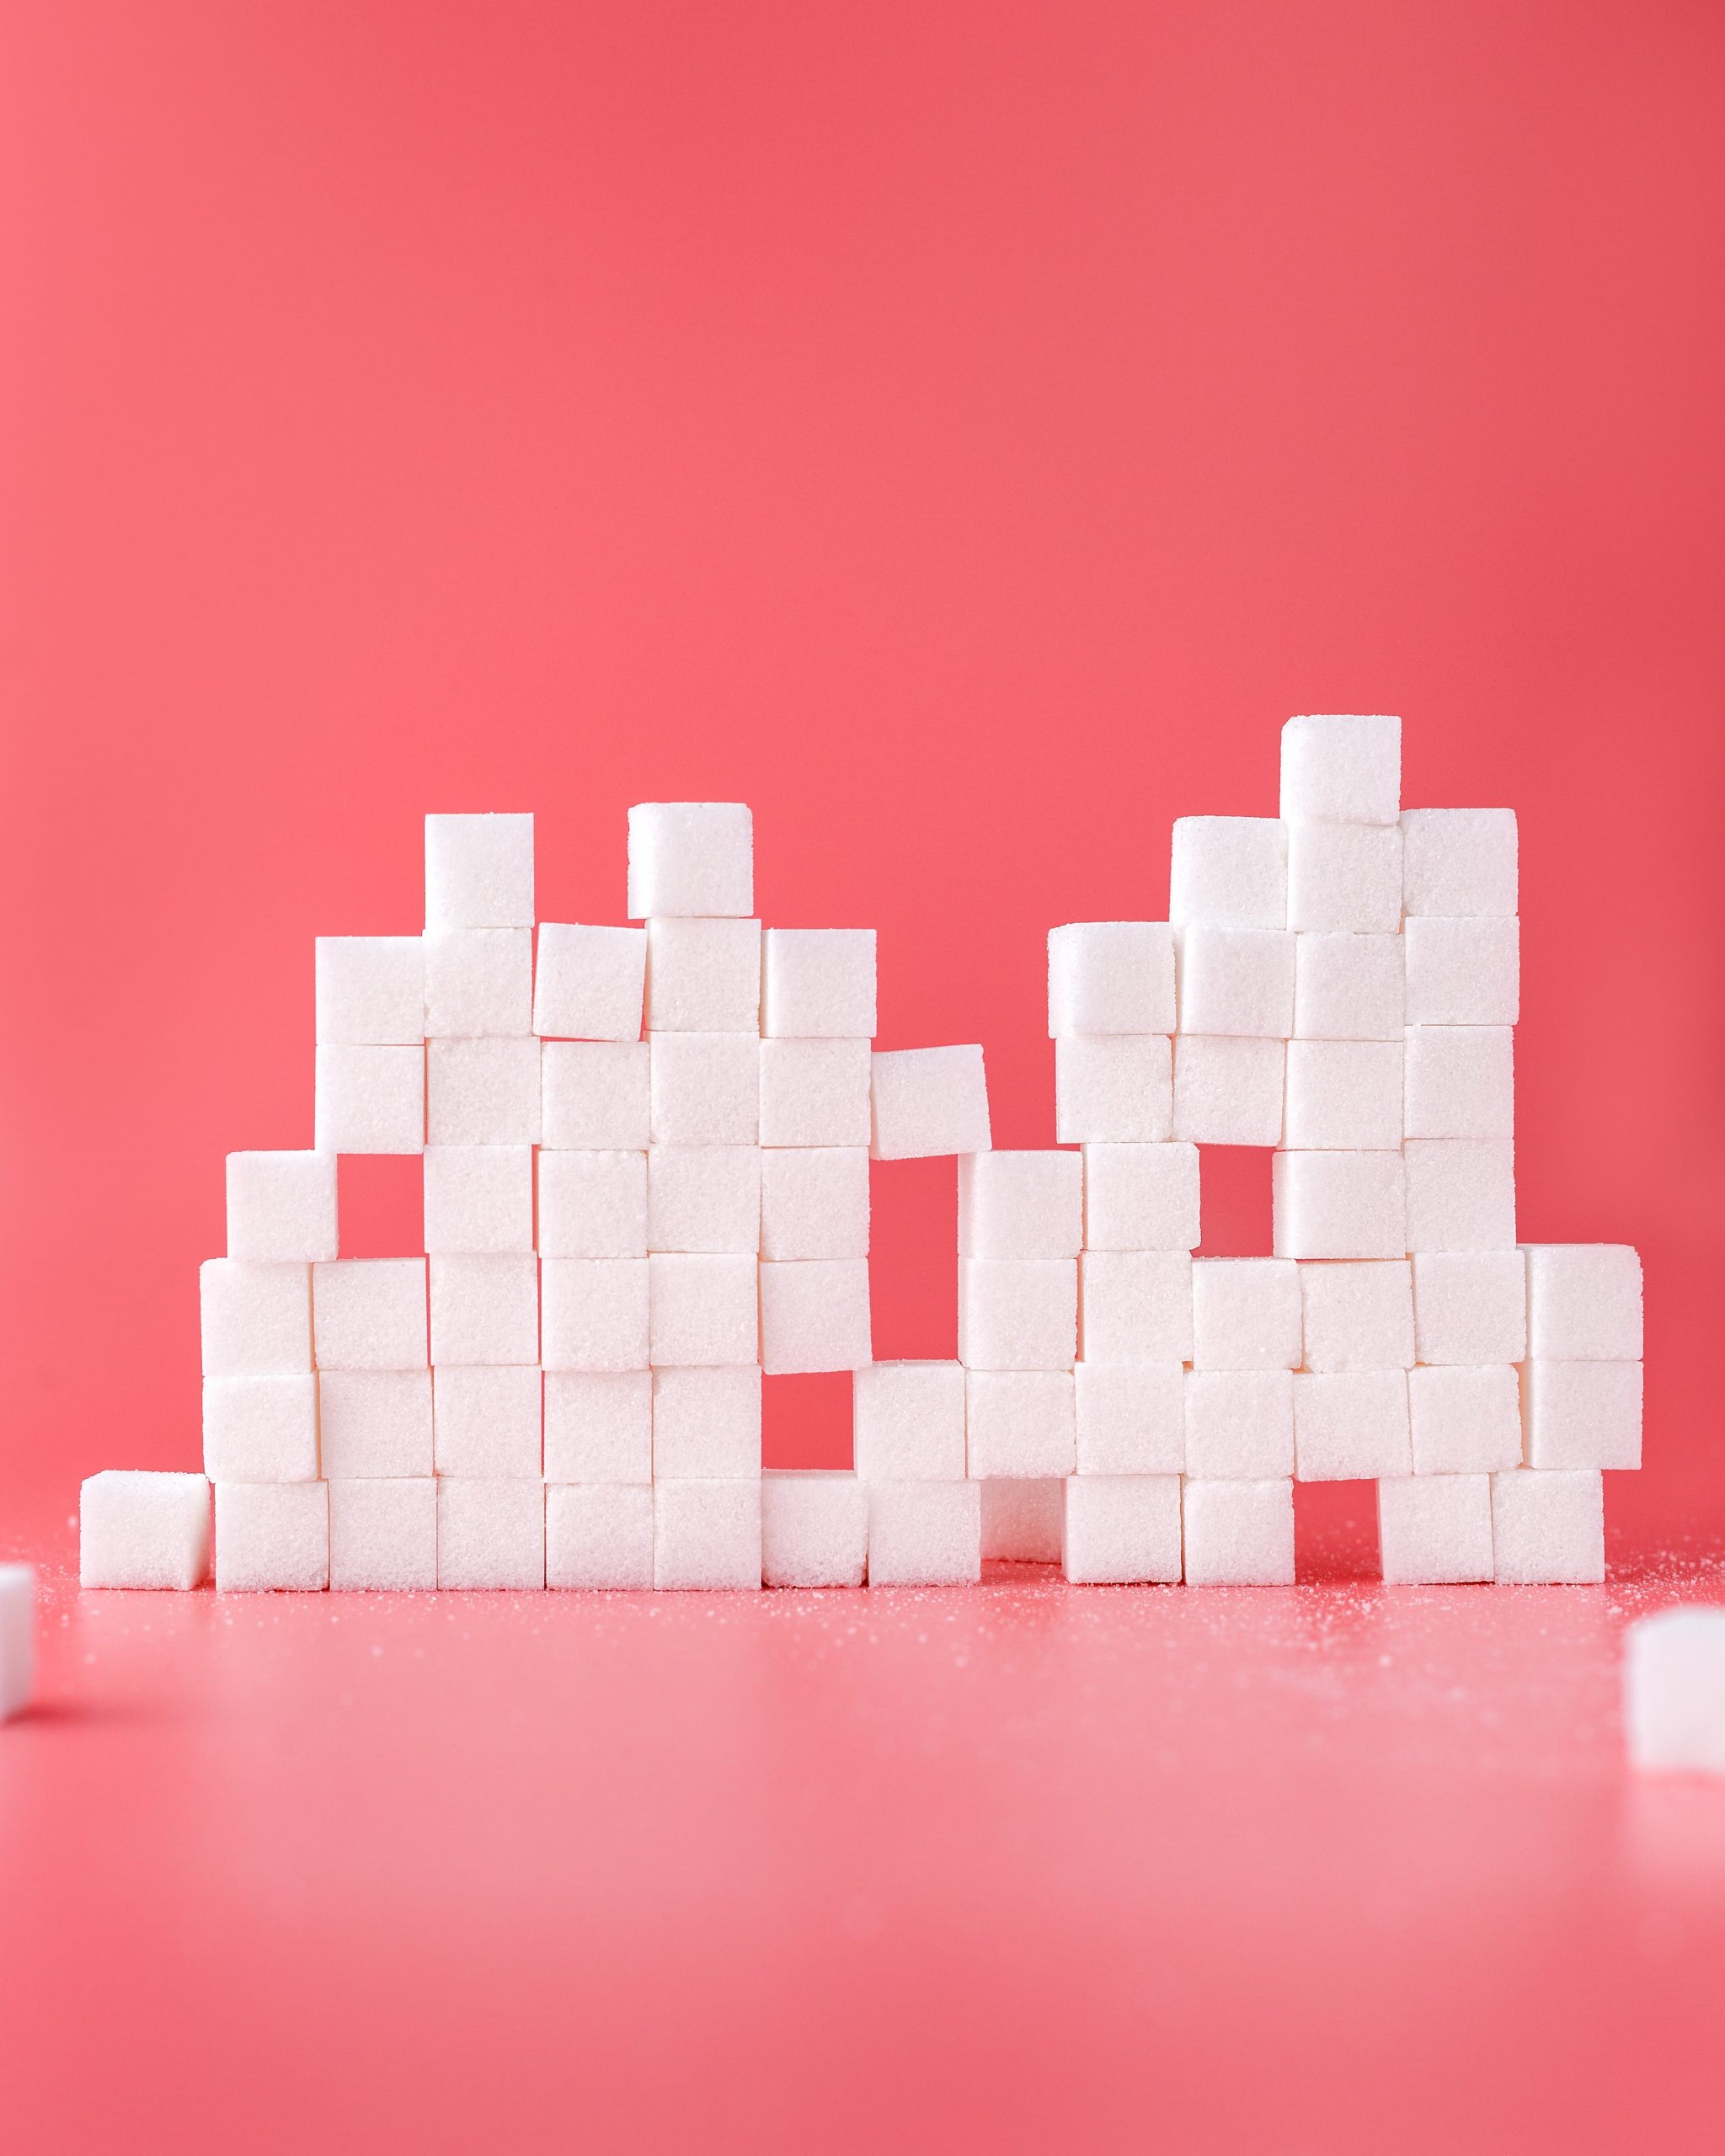 Açúcar causa diabetes? Entenda mitos e verdades &#8211; eCycle